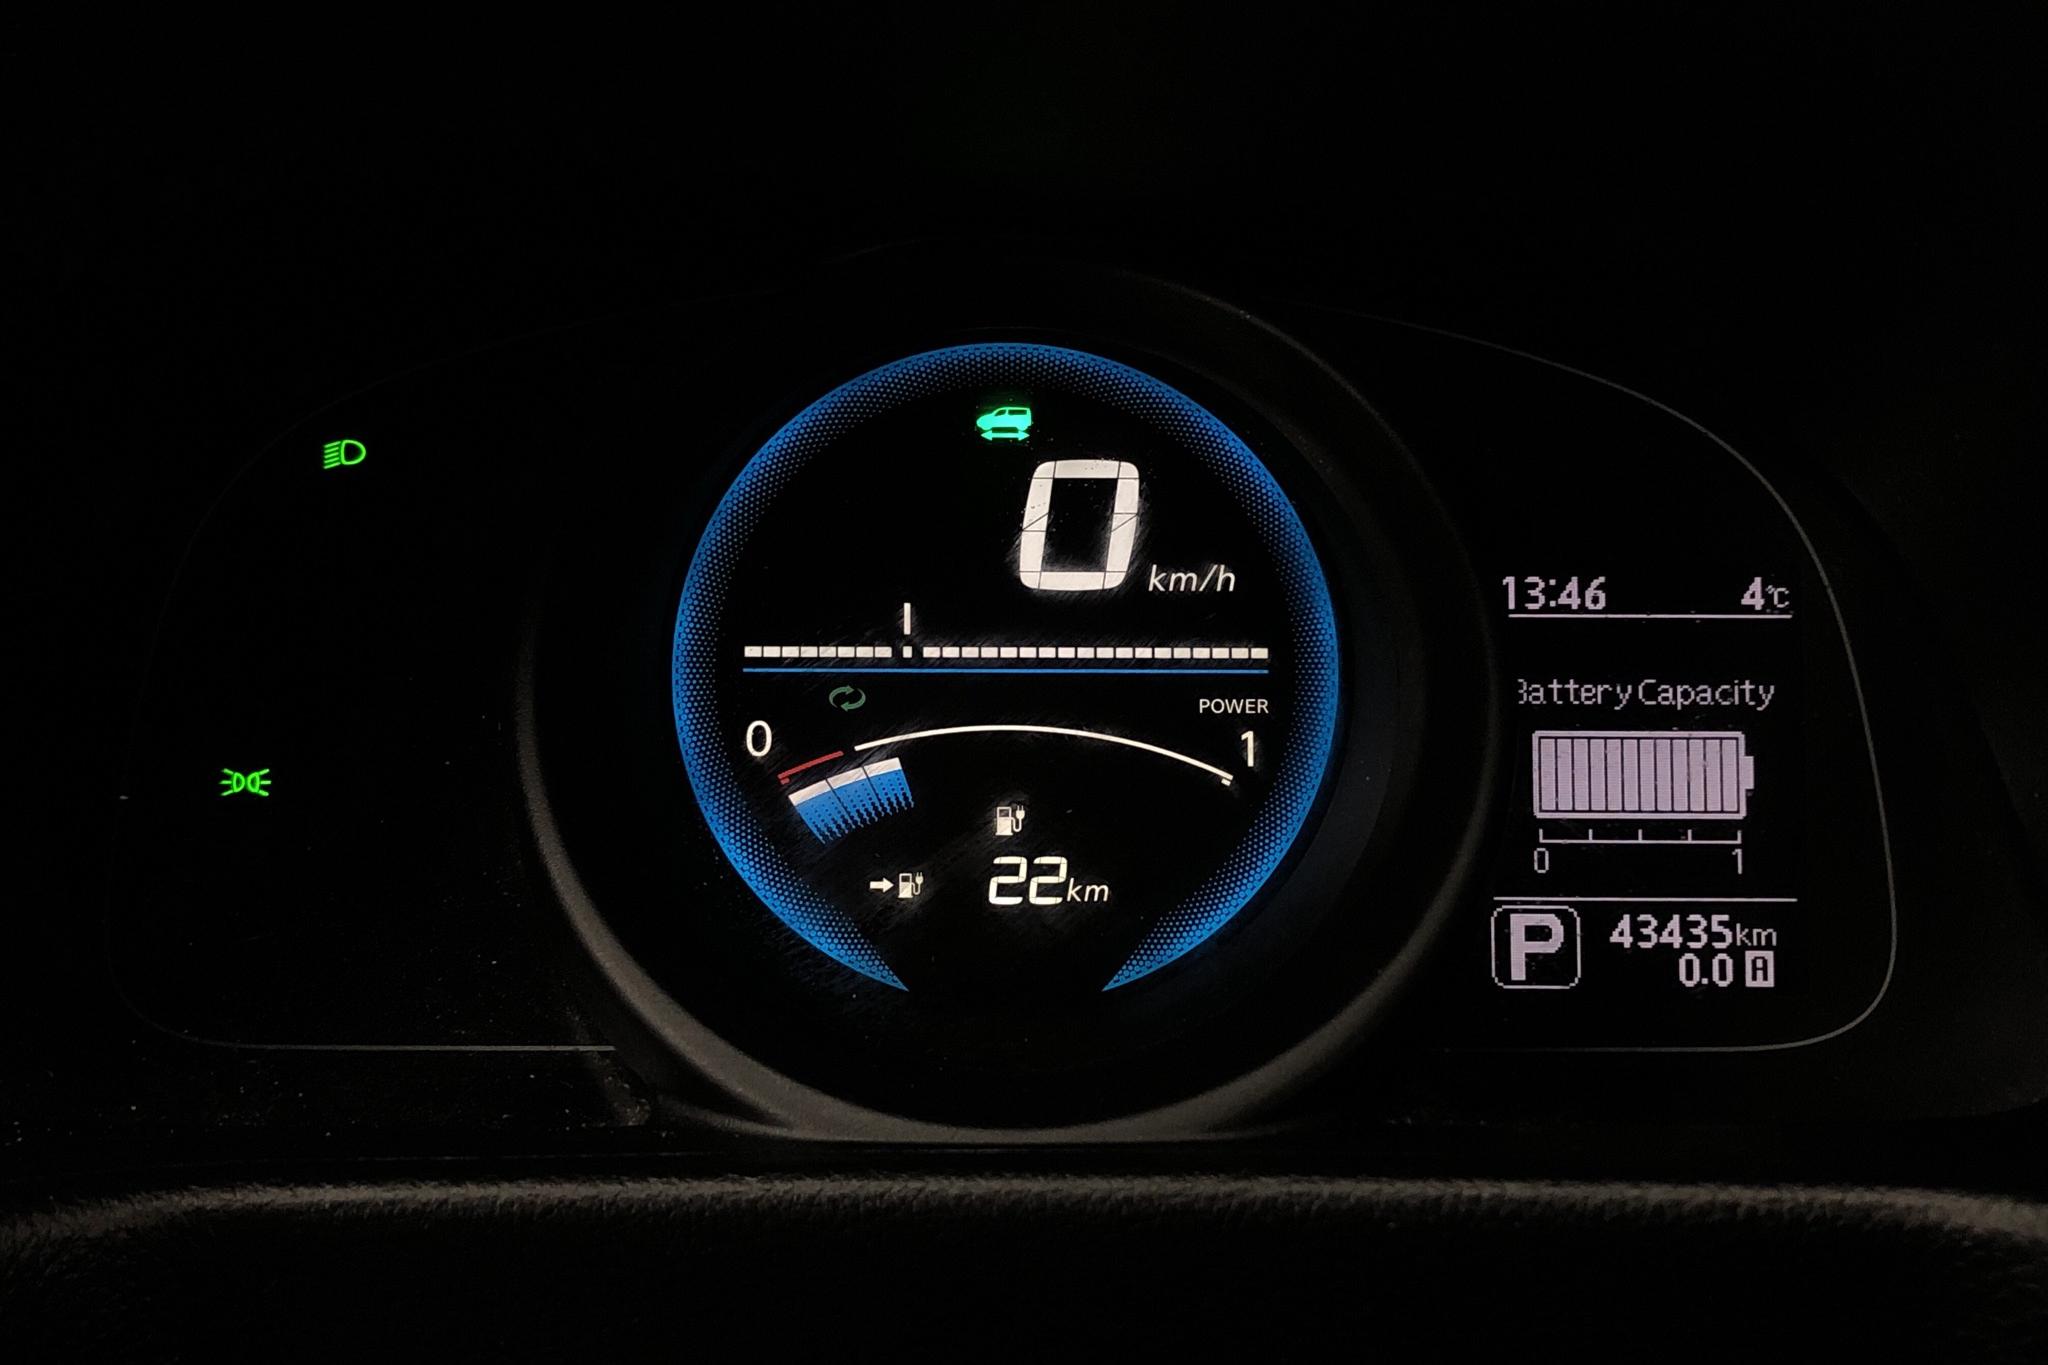 Nissan e-NV200 24,0 kWh (109hk) - 4 345 mil - Automat - vit - 2017